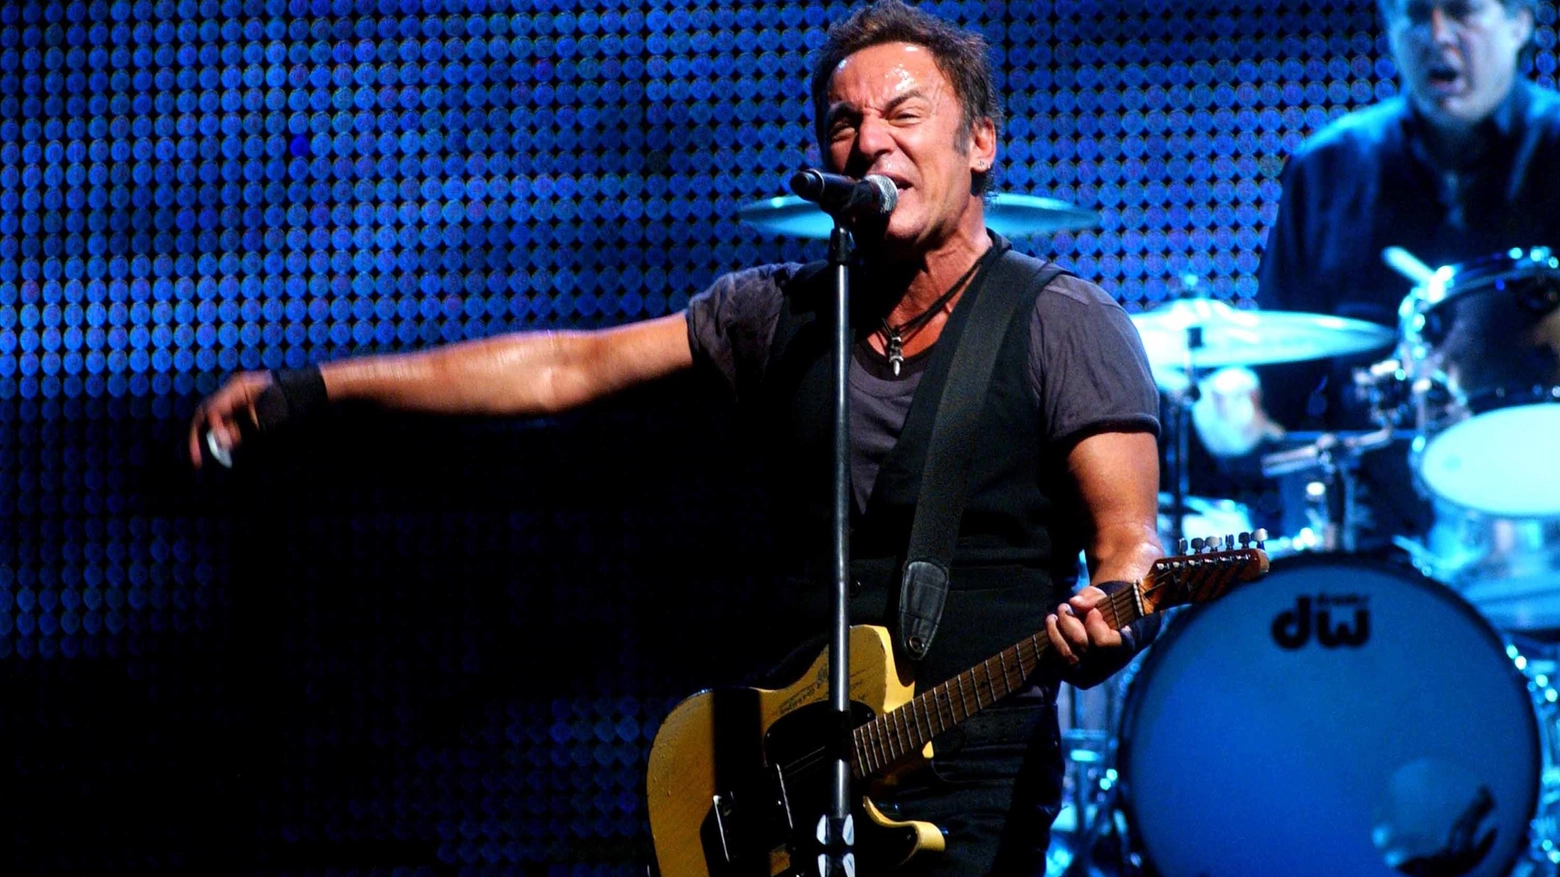 Tre mesi al maxi concerto  Springsteen, nuovo atto  Le mosse del Comune  Ma resta il rischio Tar